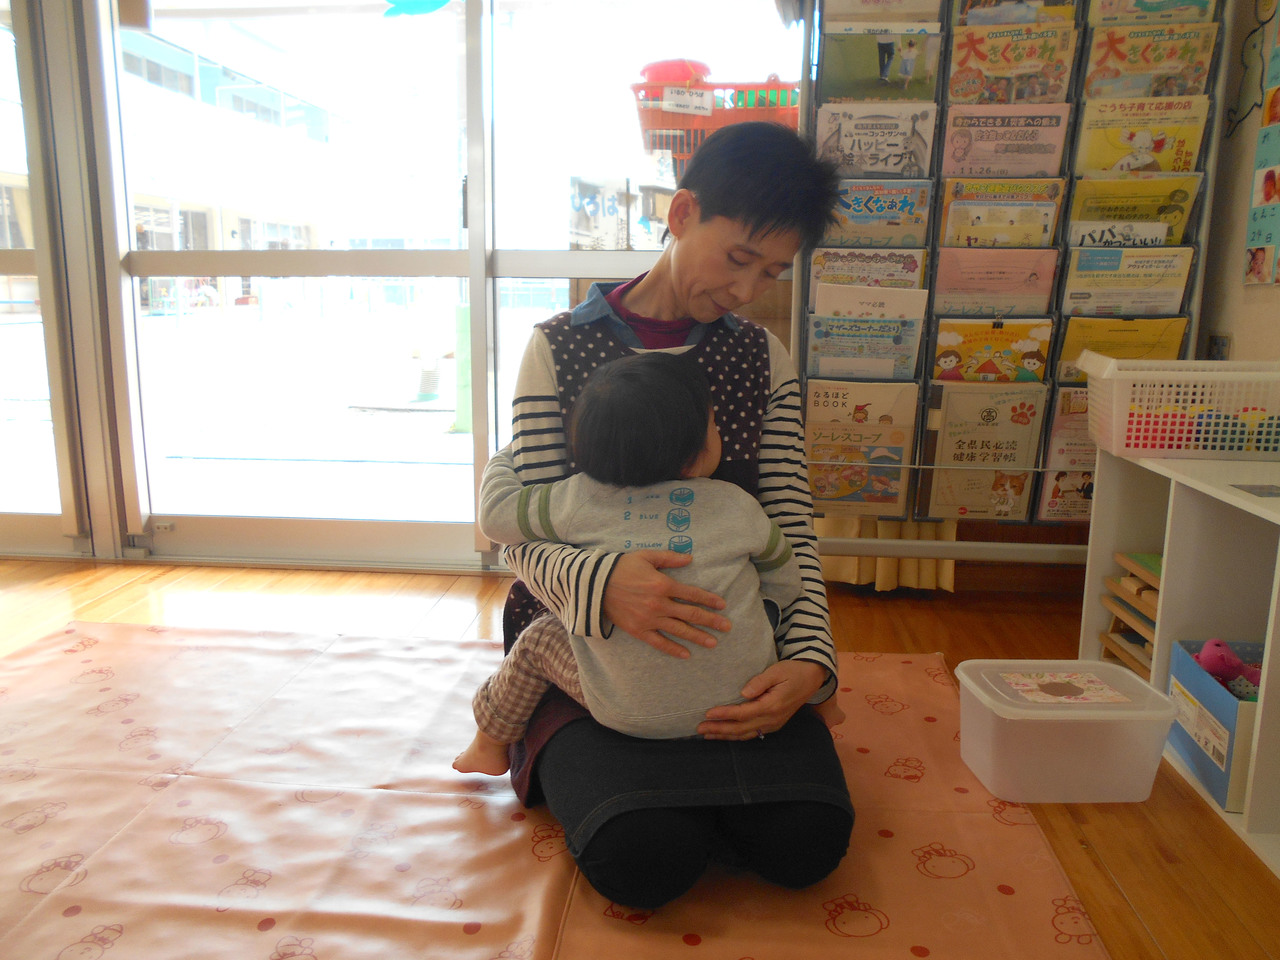 高知市地域子育て支援センター「いるかひろば」で子どもと関わる土居寿美子さん  / いるかひろば提供